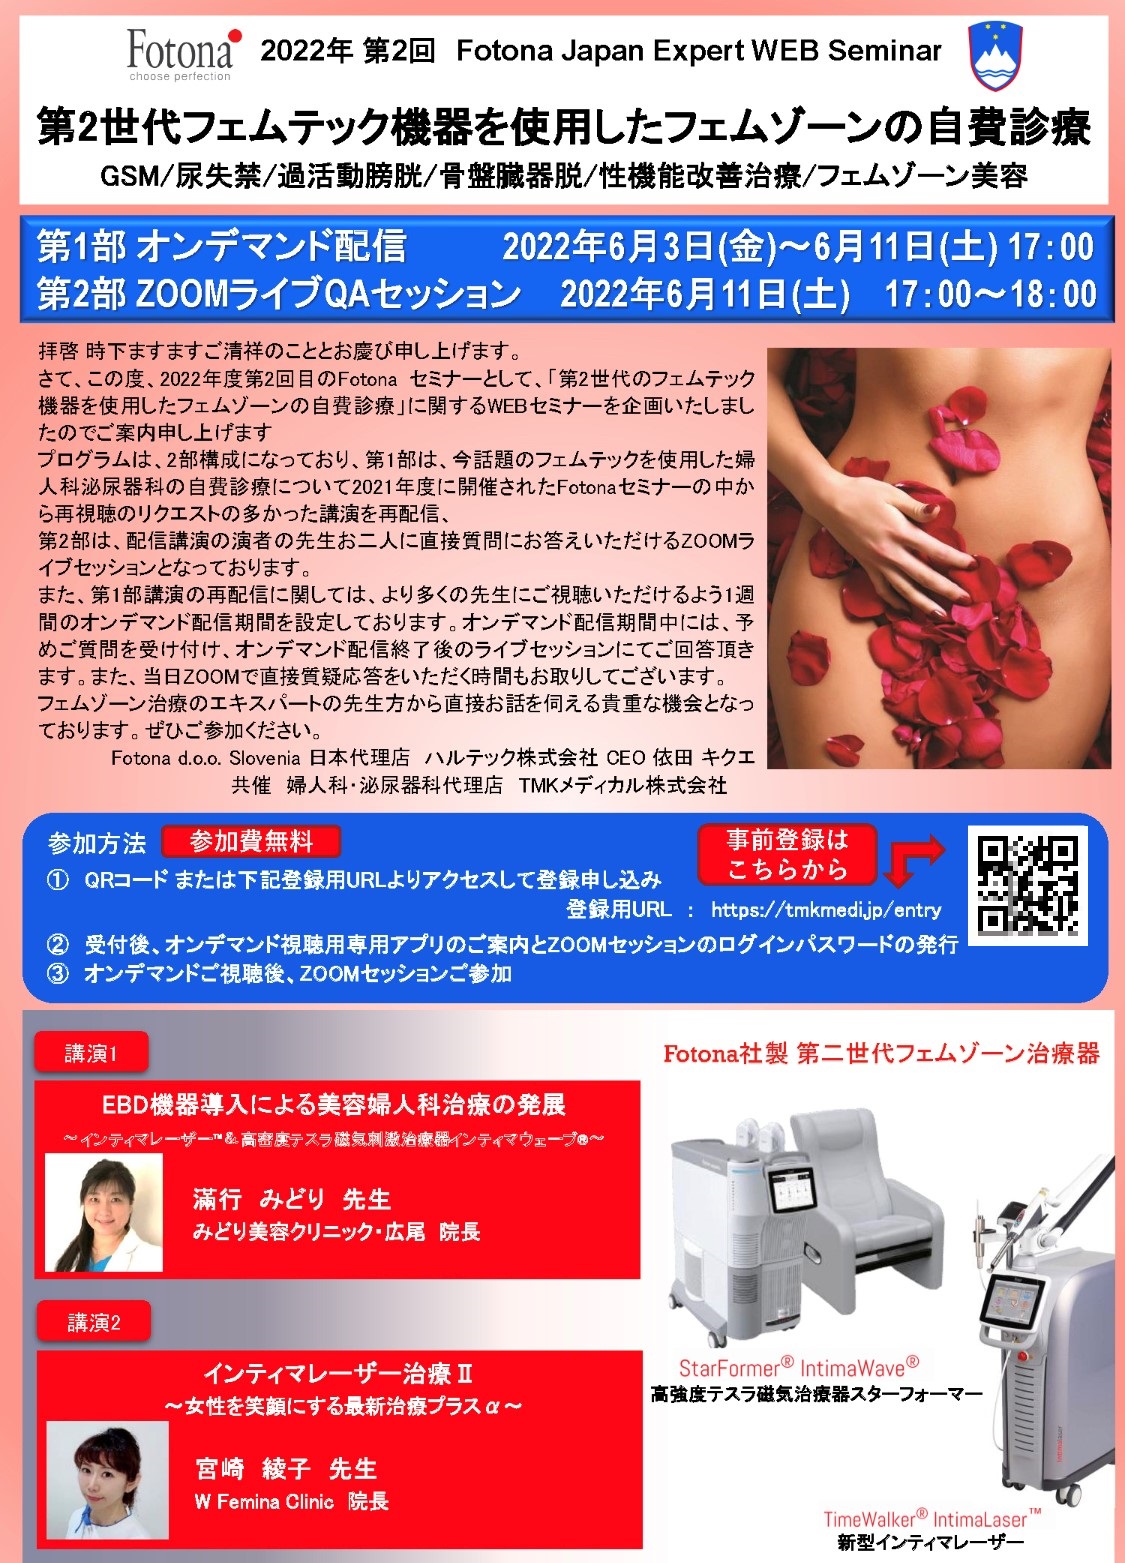 FOTONA Japan Expert WEB Seminar